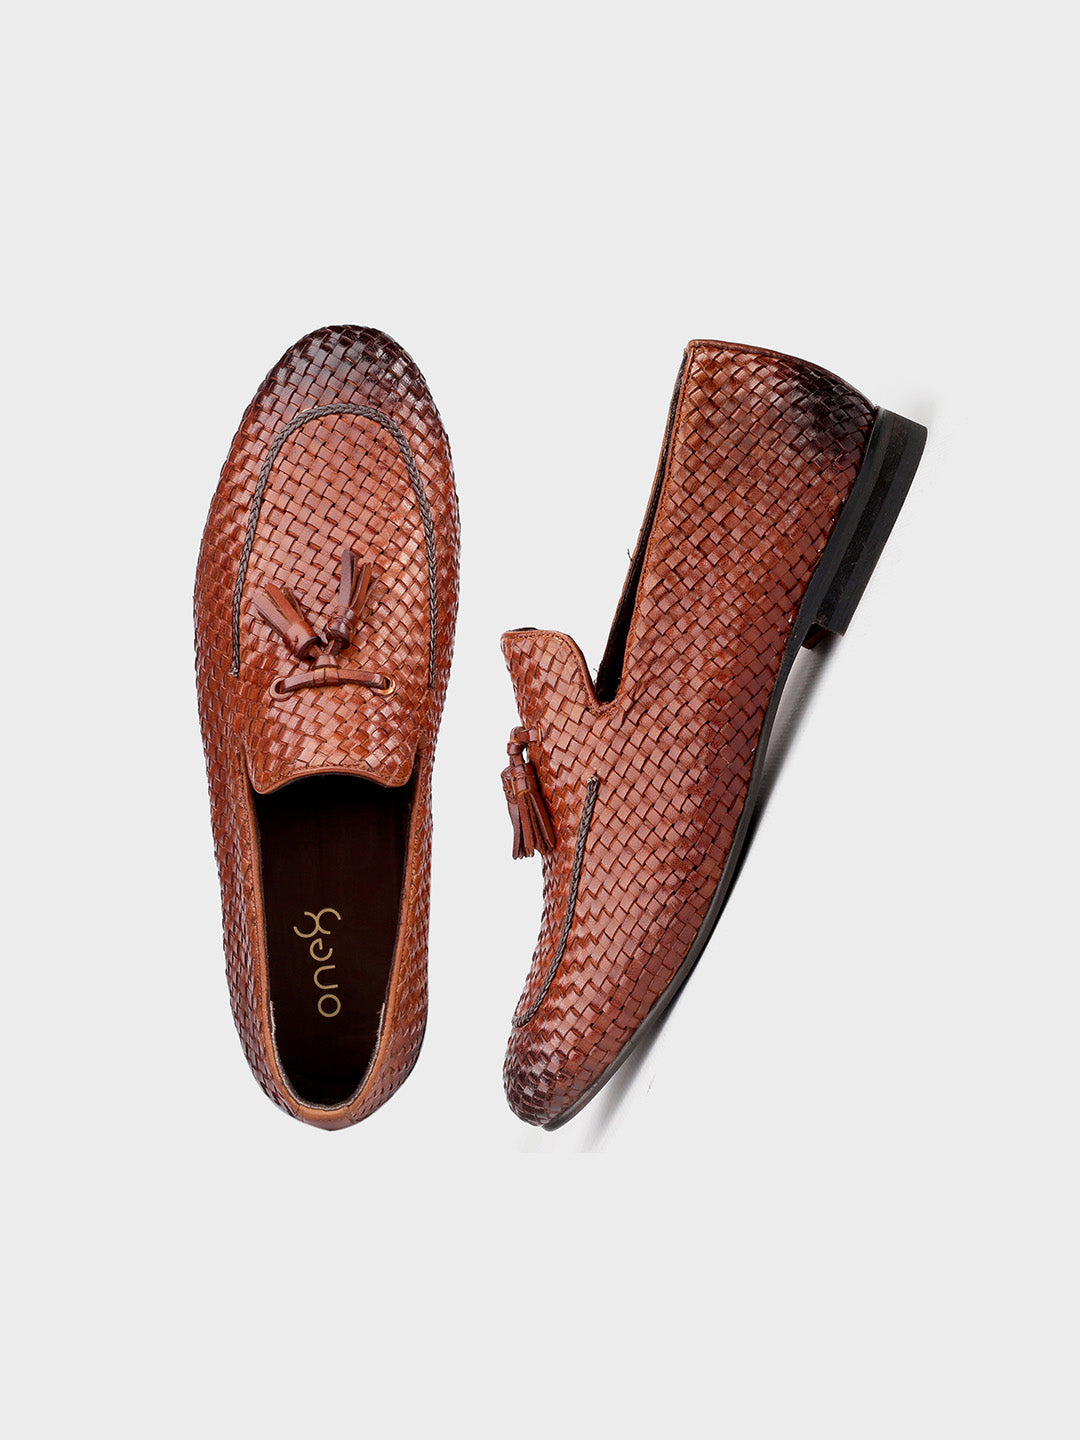 Tan Leather Men's Slip-On Tassel Shoes